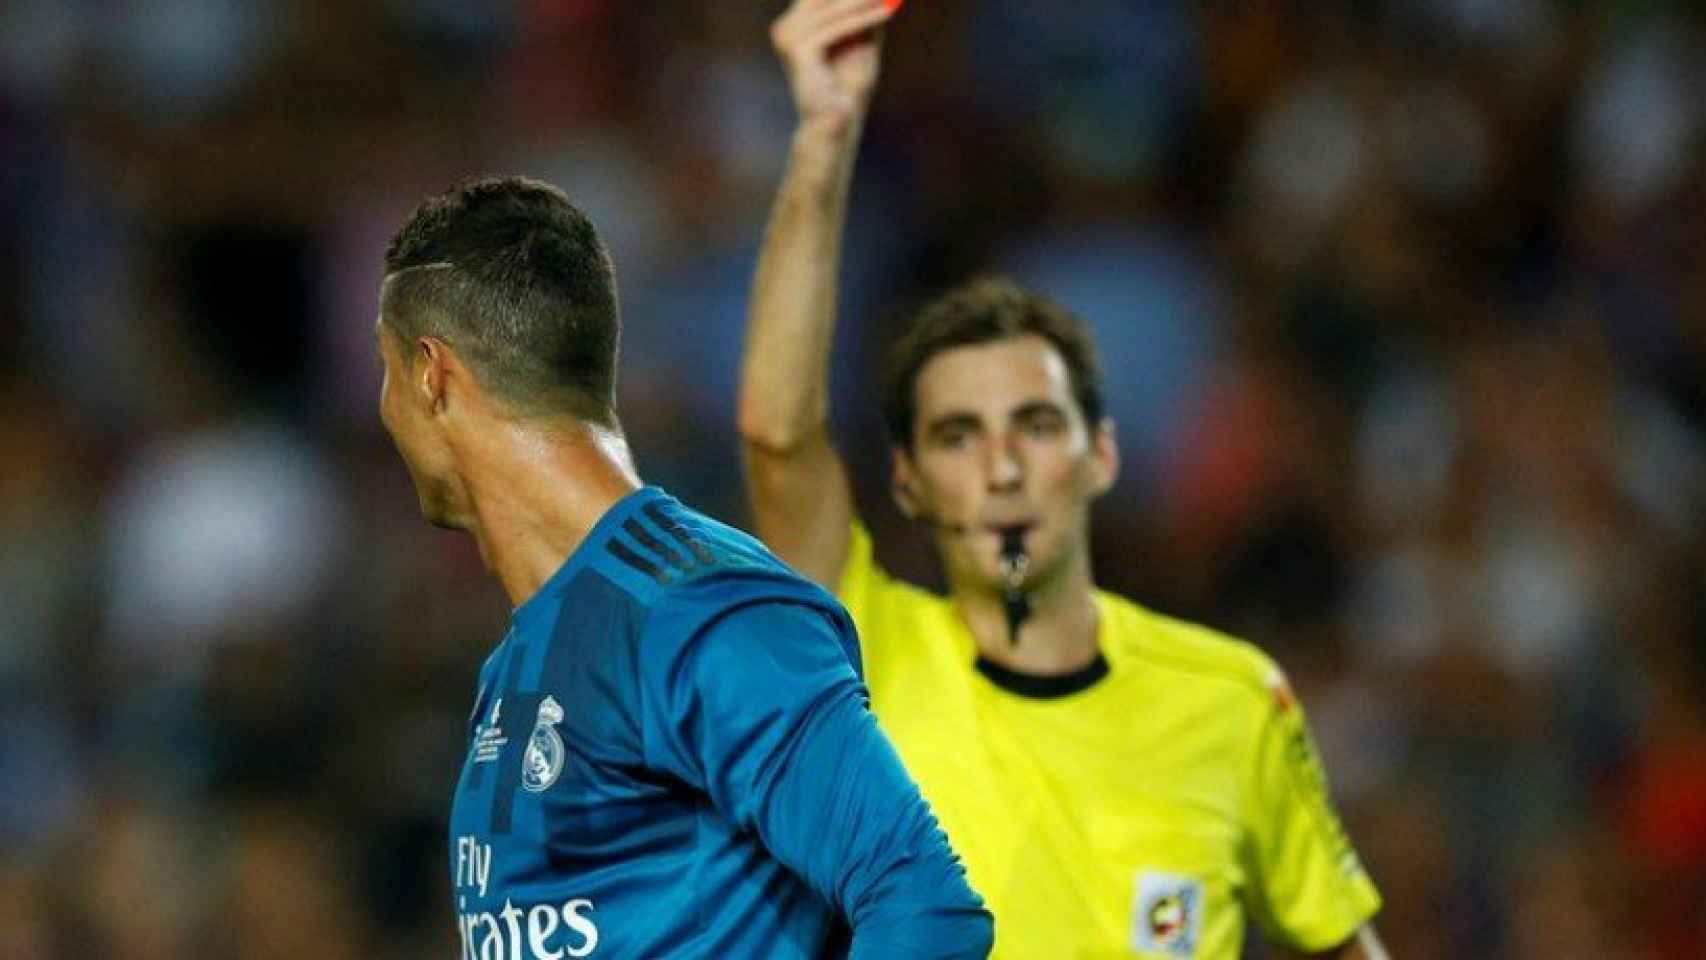 De Burgos Bengoetxea y su expulsión a Cristiano Ronaldo en 2017